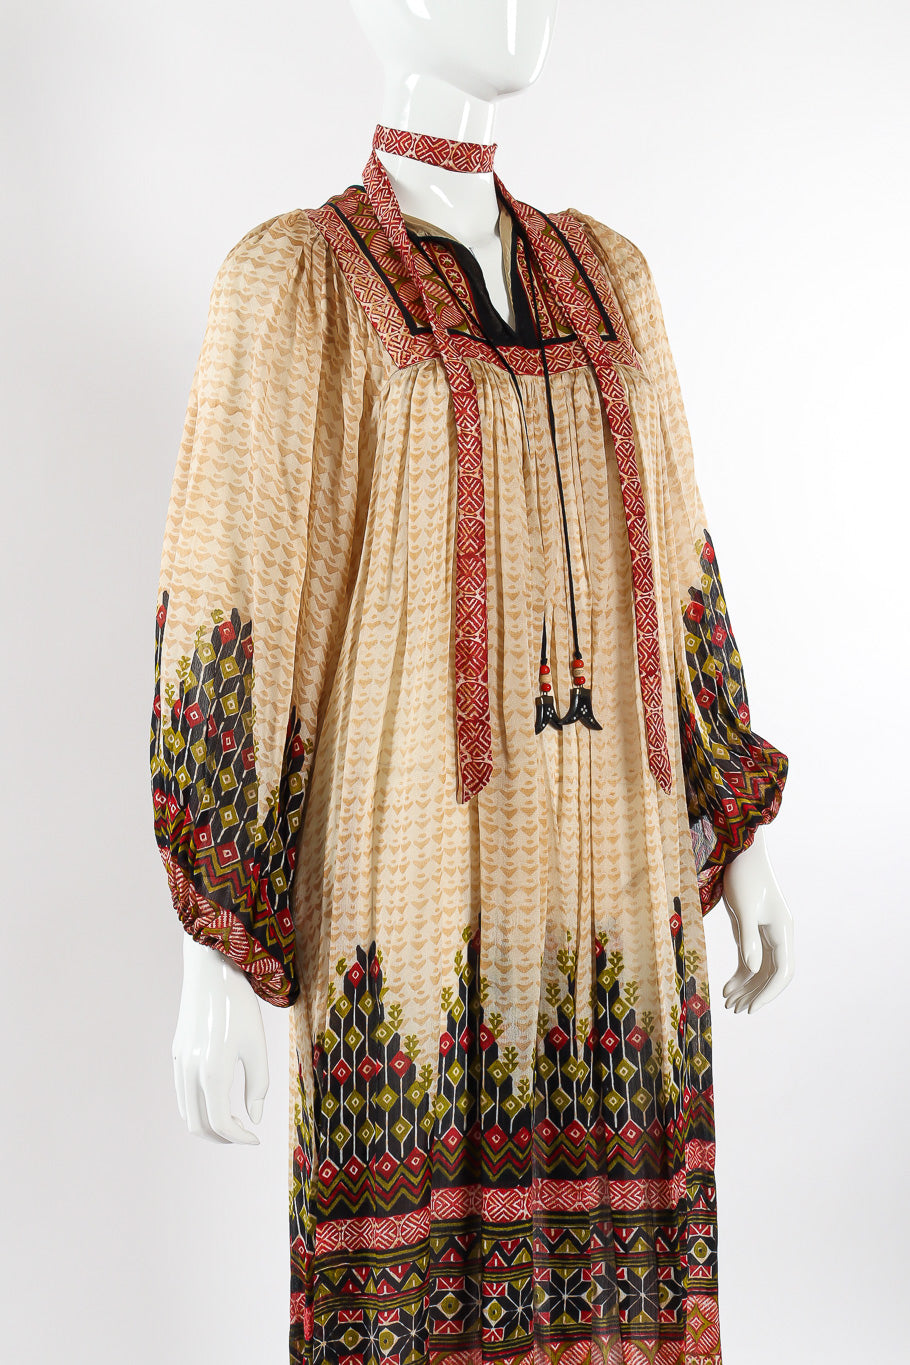 Block print silk dress by Ritu Kumar for Judith Ann Front Close-Up. @recessla